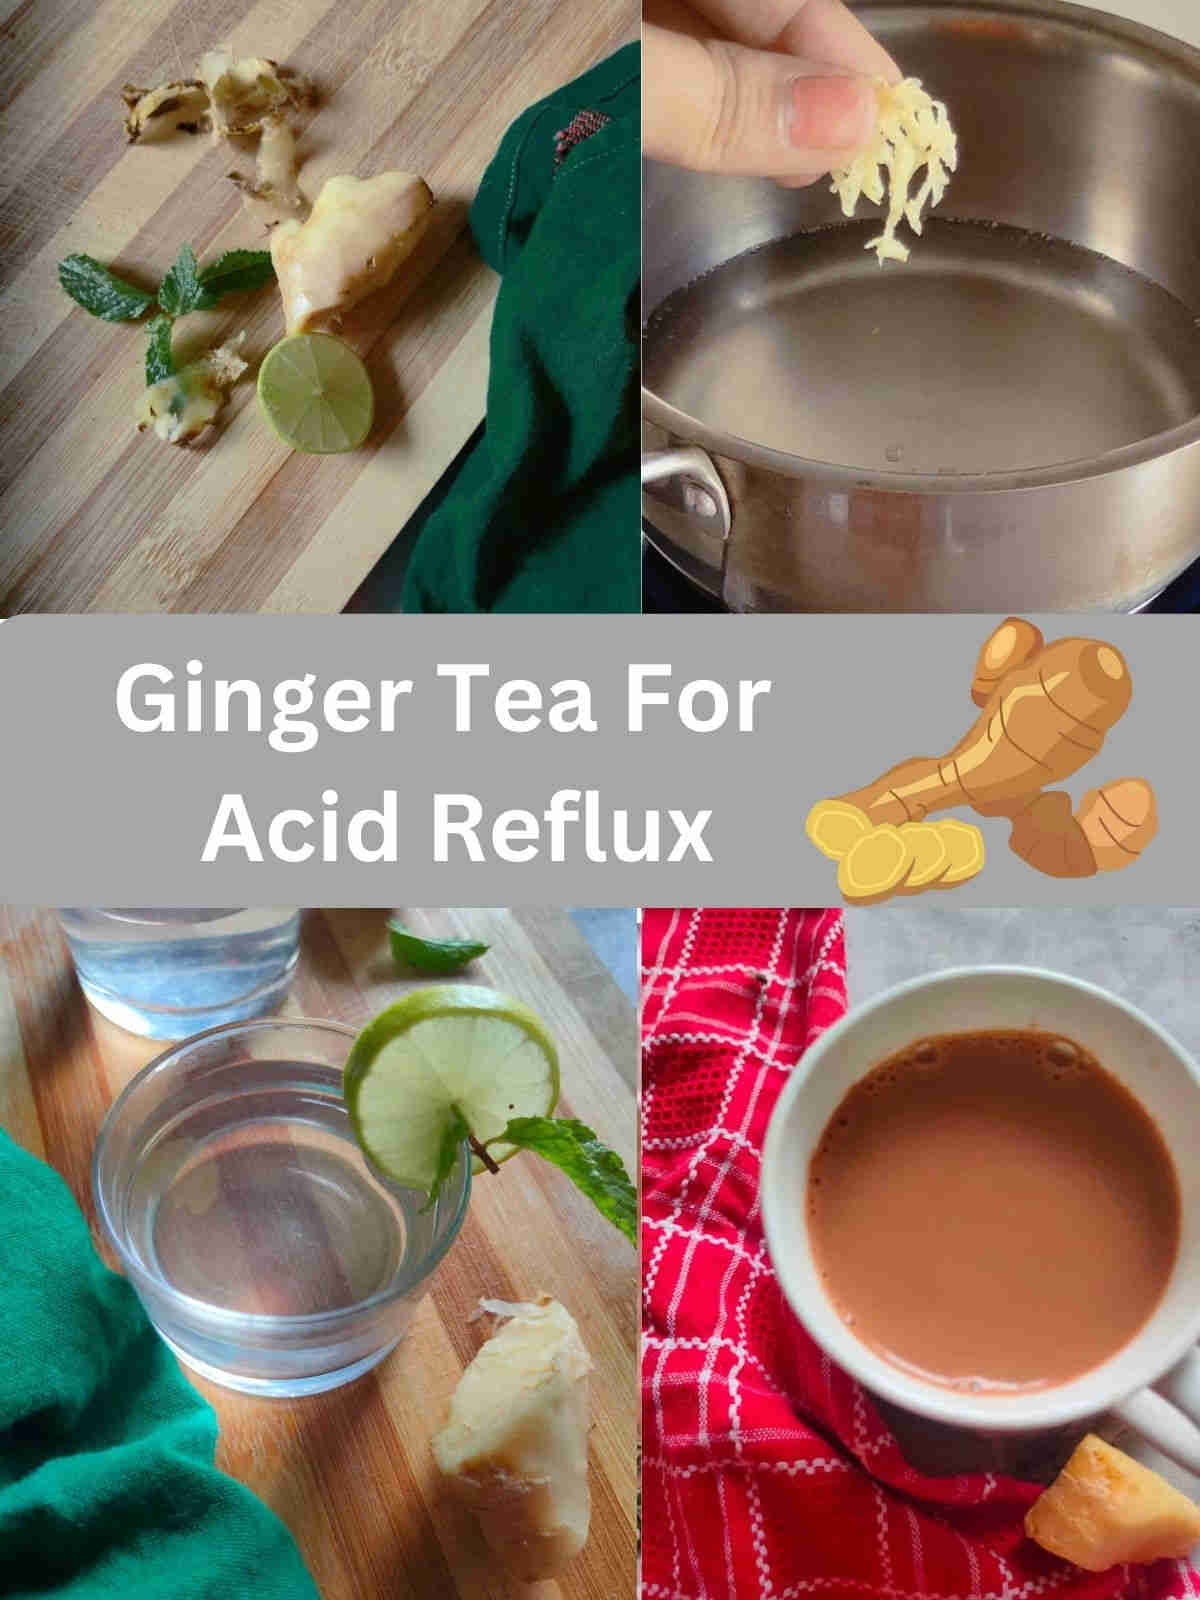 Ginger Tea for acid reflux 2 methods